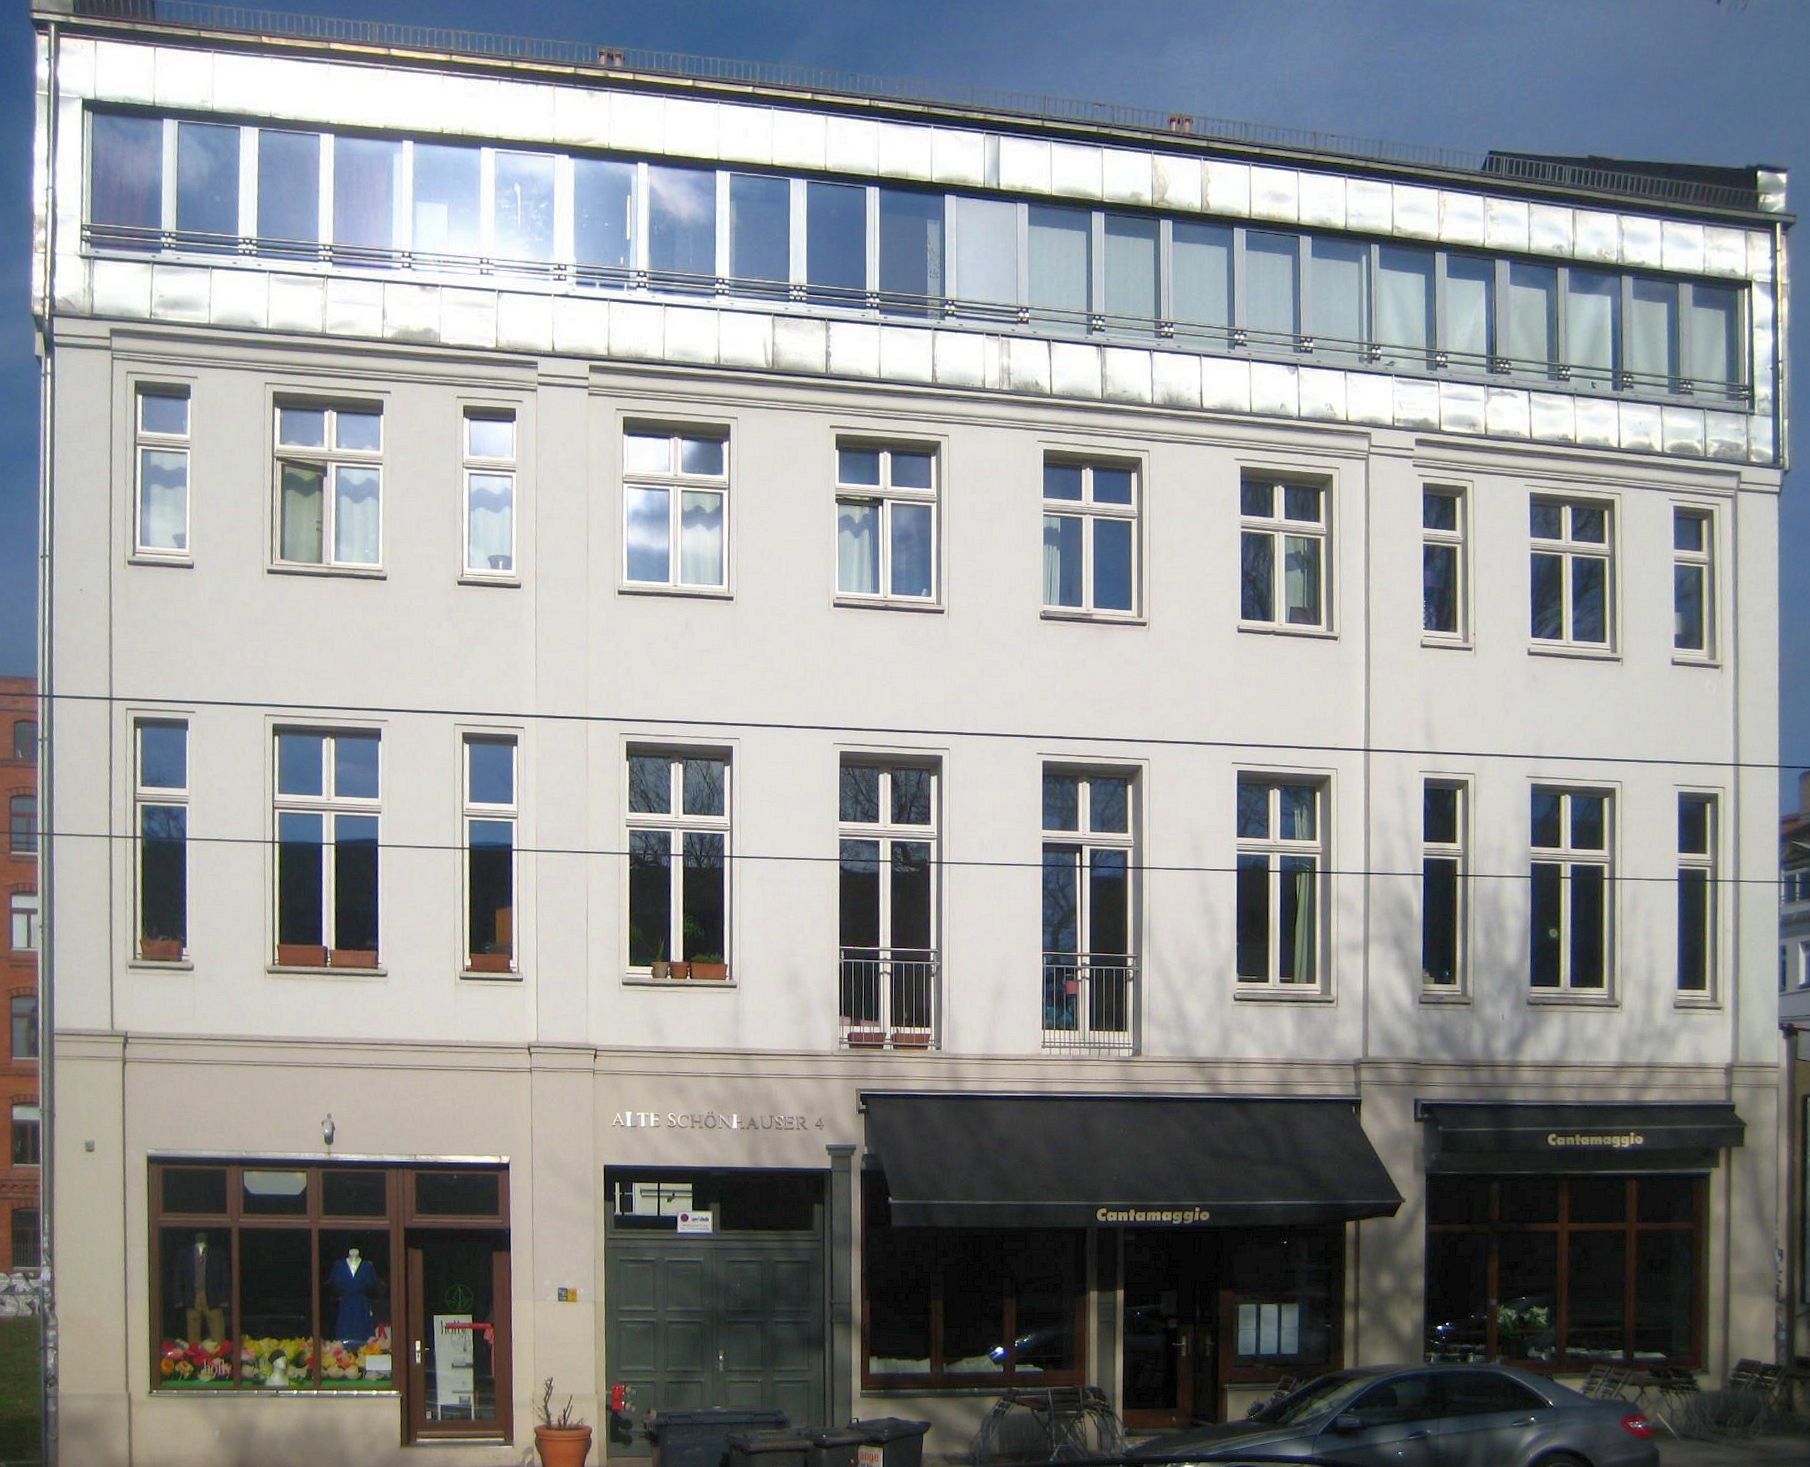 Das heutige Wohnhaus in der Alten Schönhauser Straße 4